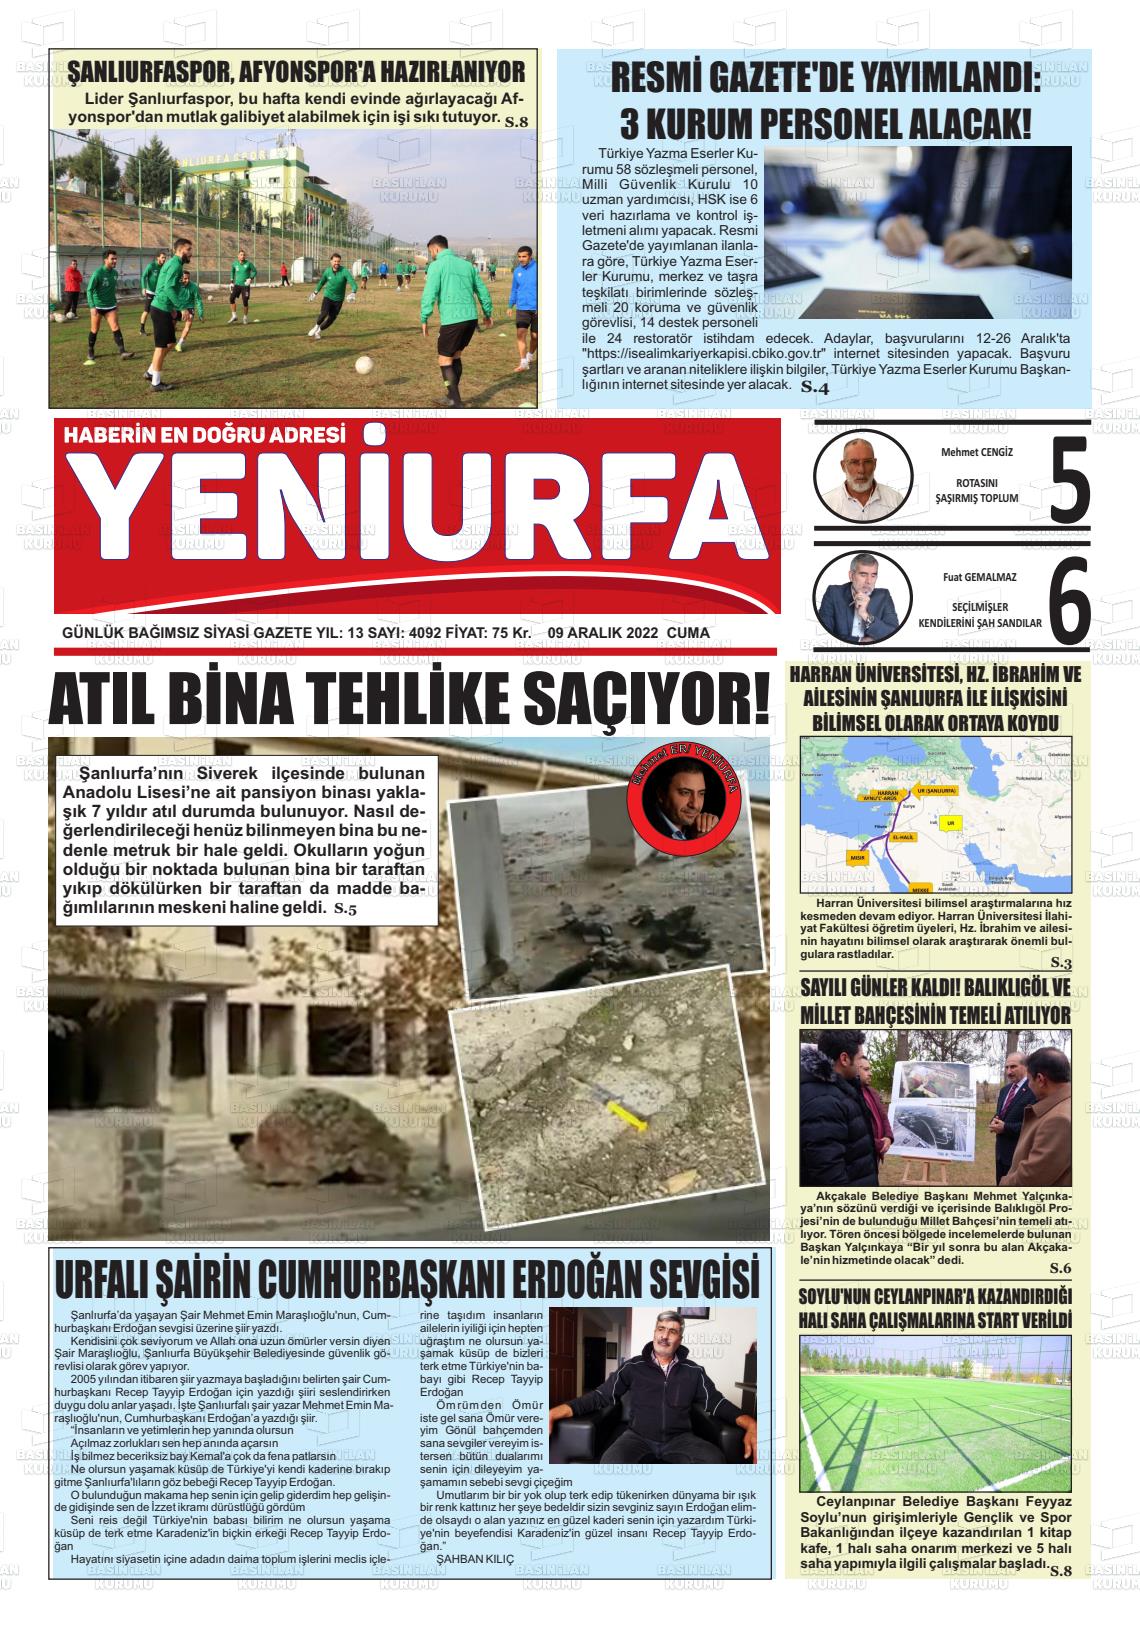 09 Aralık 2022 Yeni Urfa Gazete Manşeti